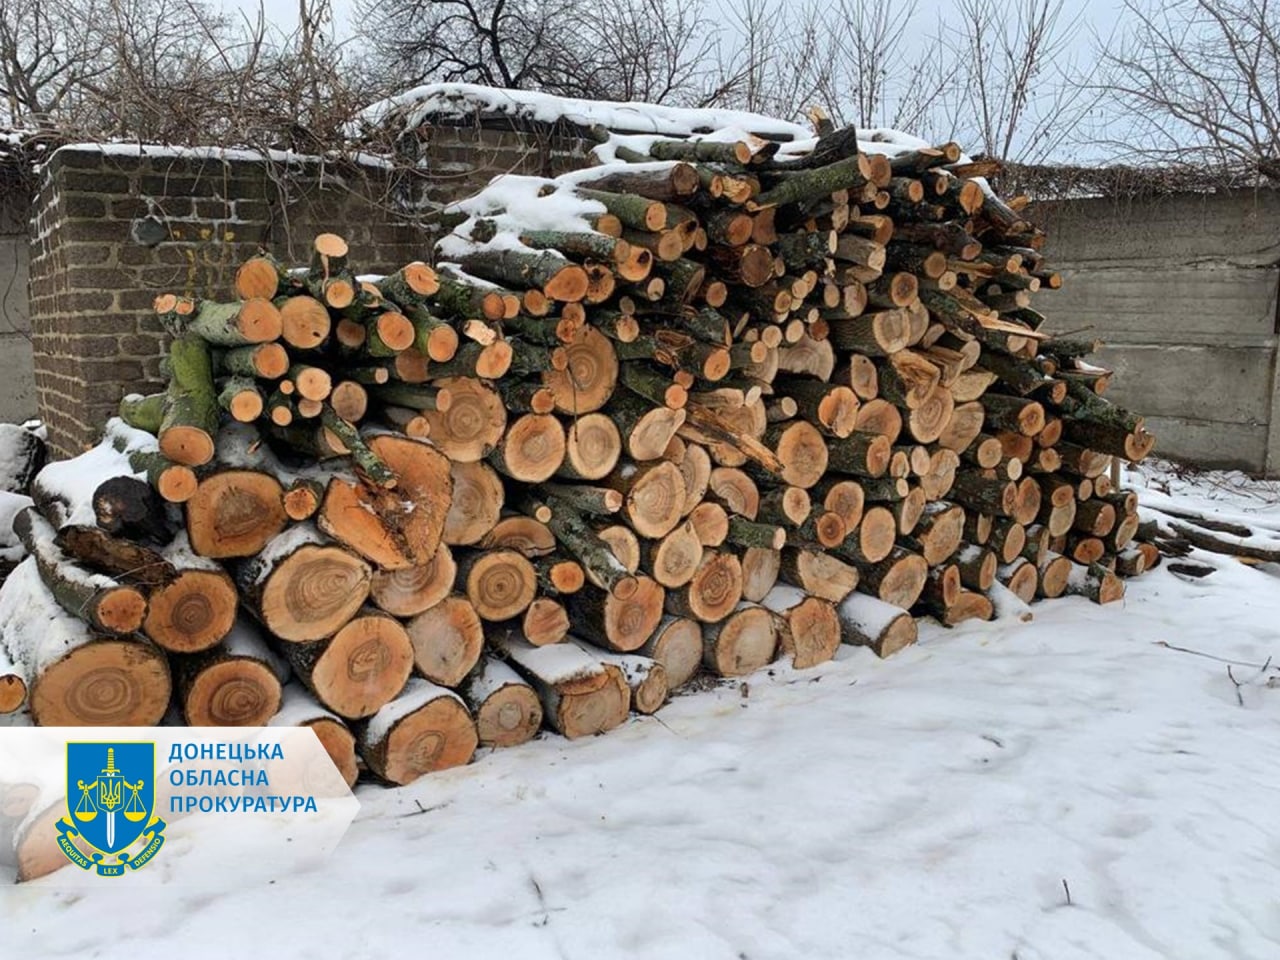 Незаконна порубка дерев на 1,2 млн грн - на Донеччині судитимуть 4 осіб